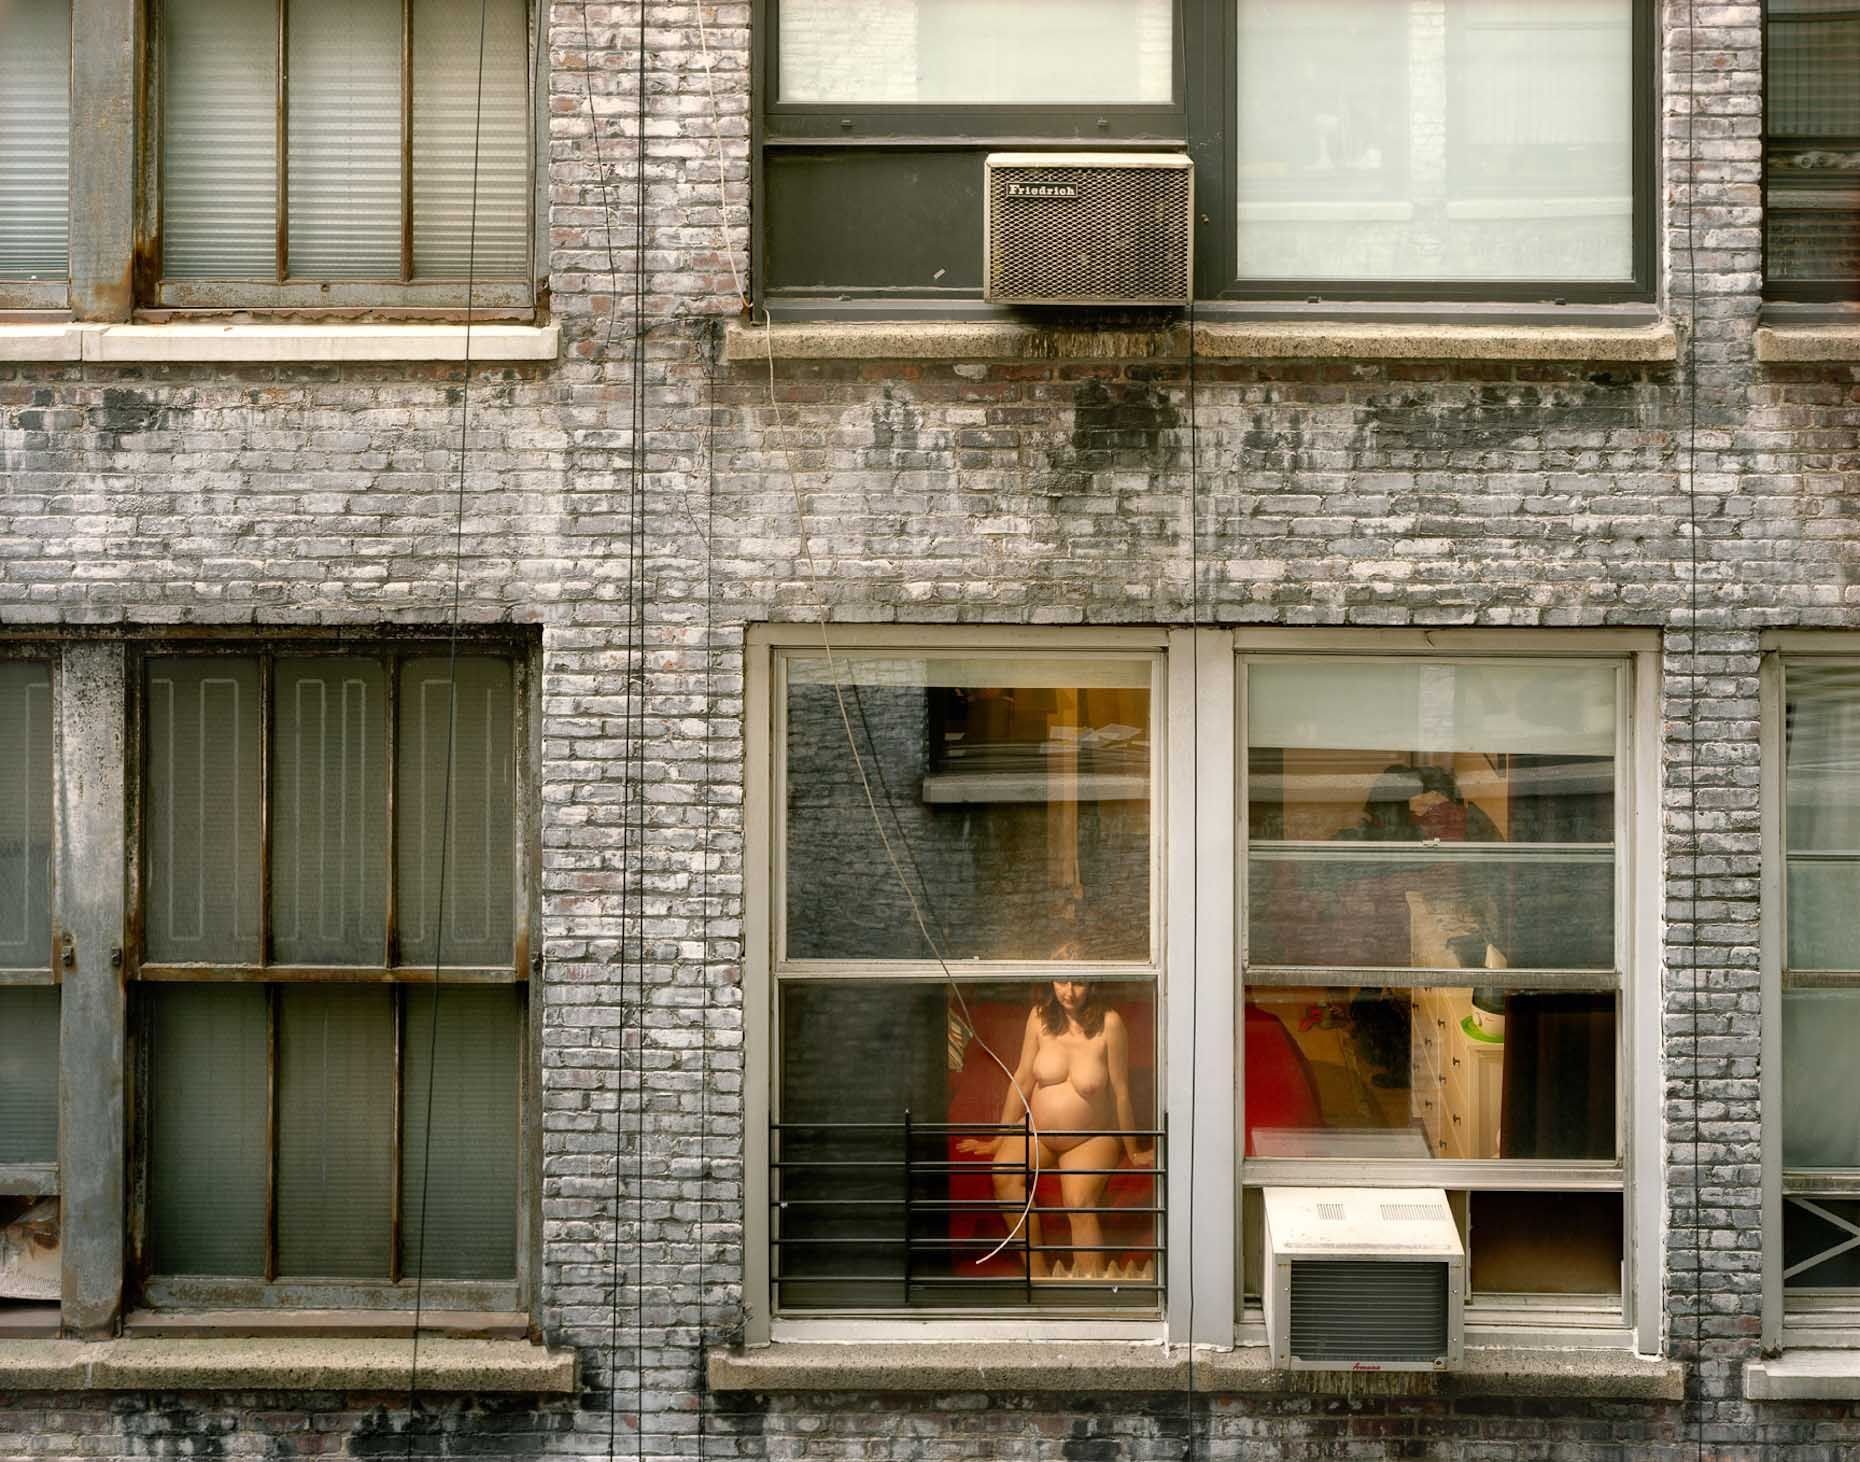 Подглядывания первые. Париж напротив. Гейл Алберт-Халабан, «из моего окна». Загляни в окно.